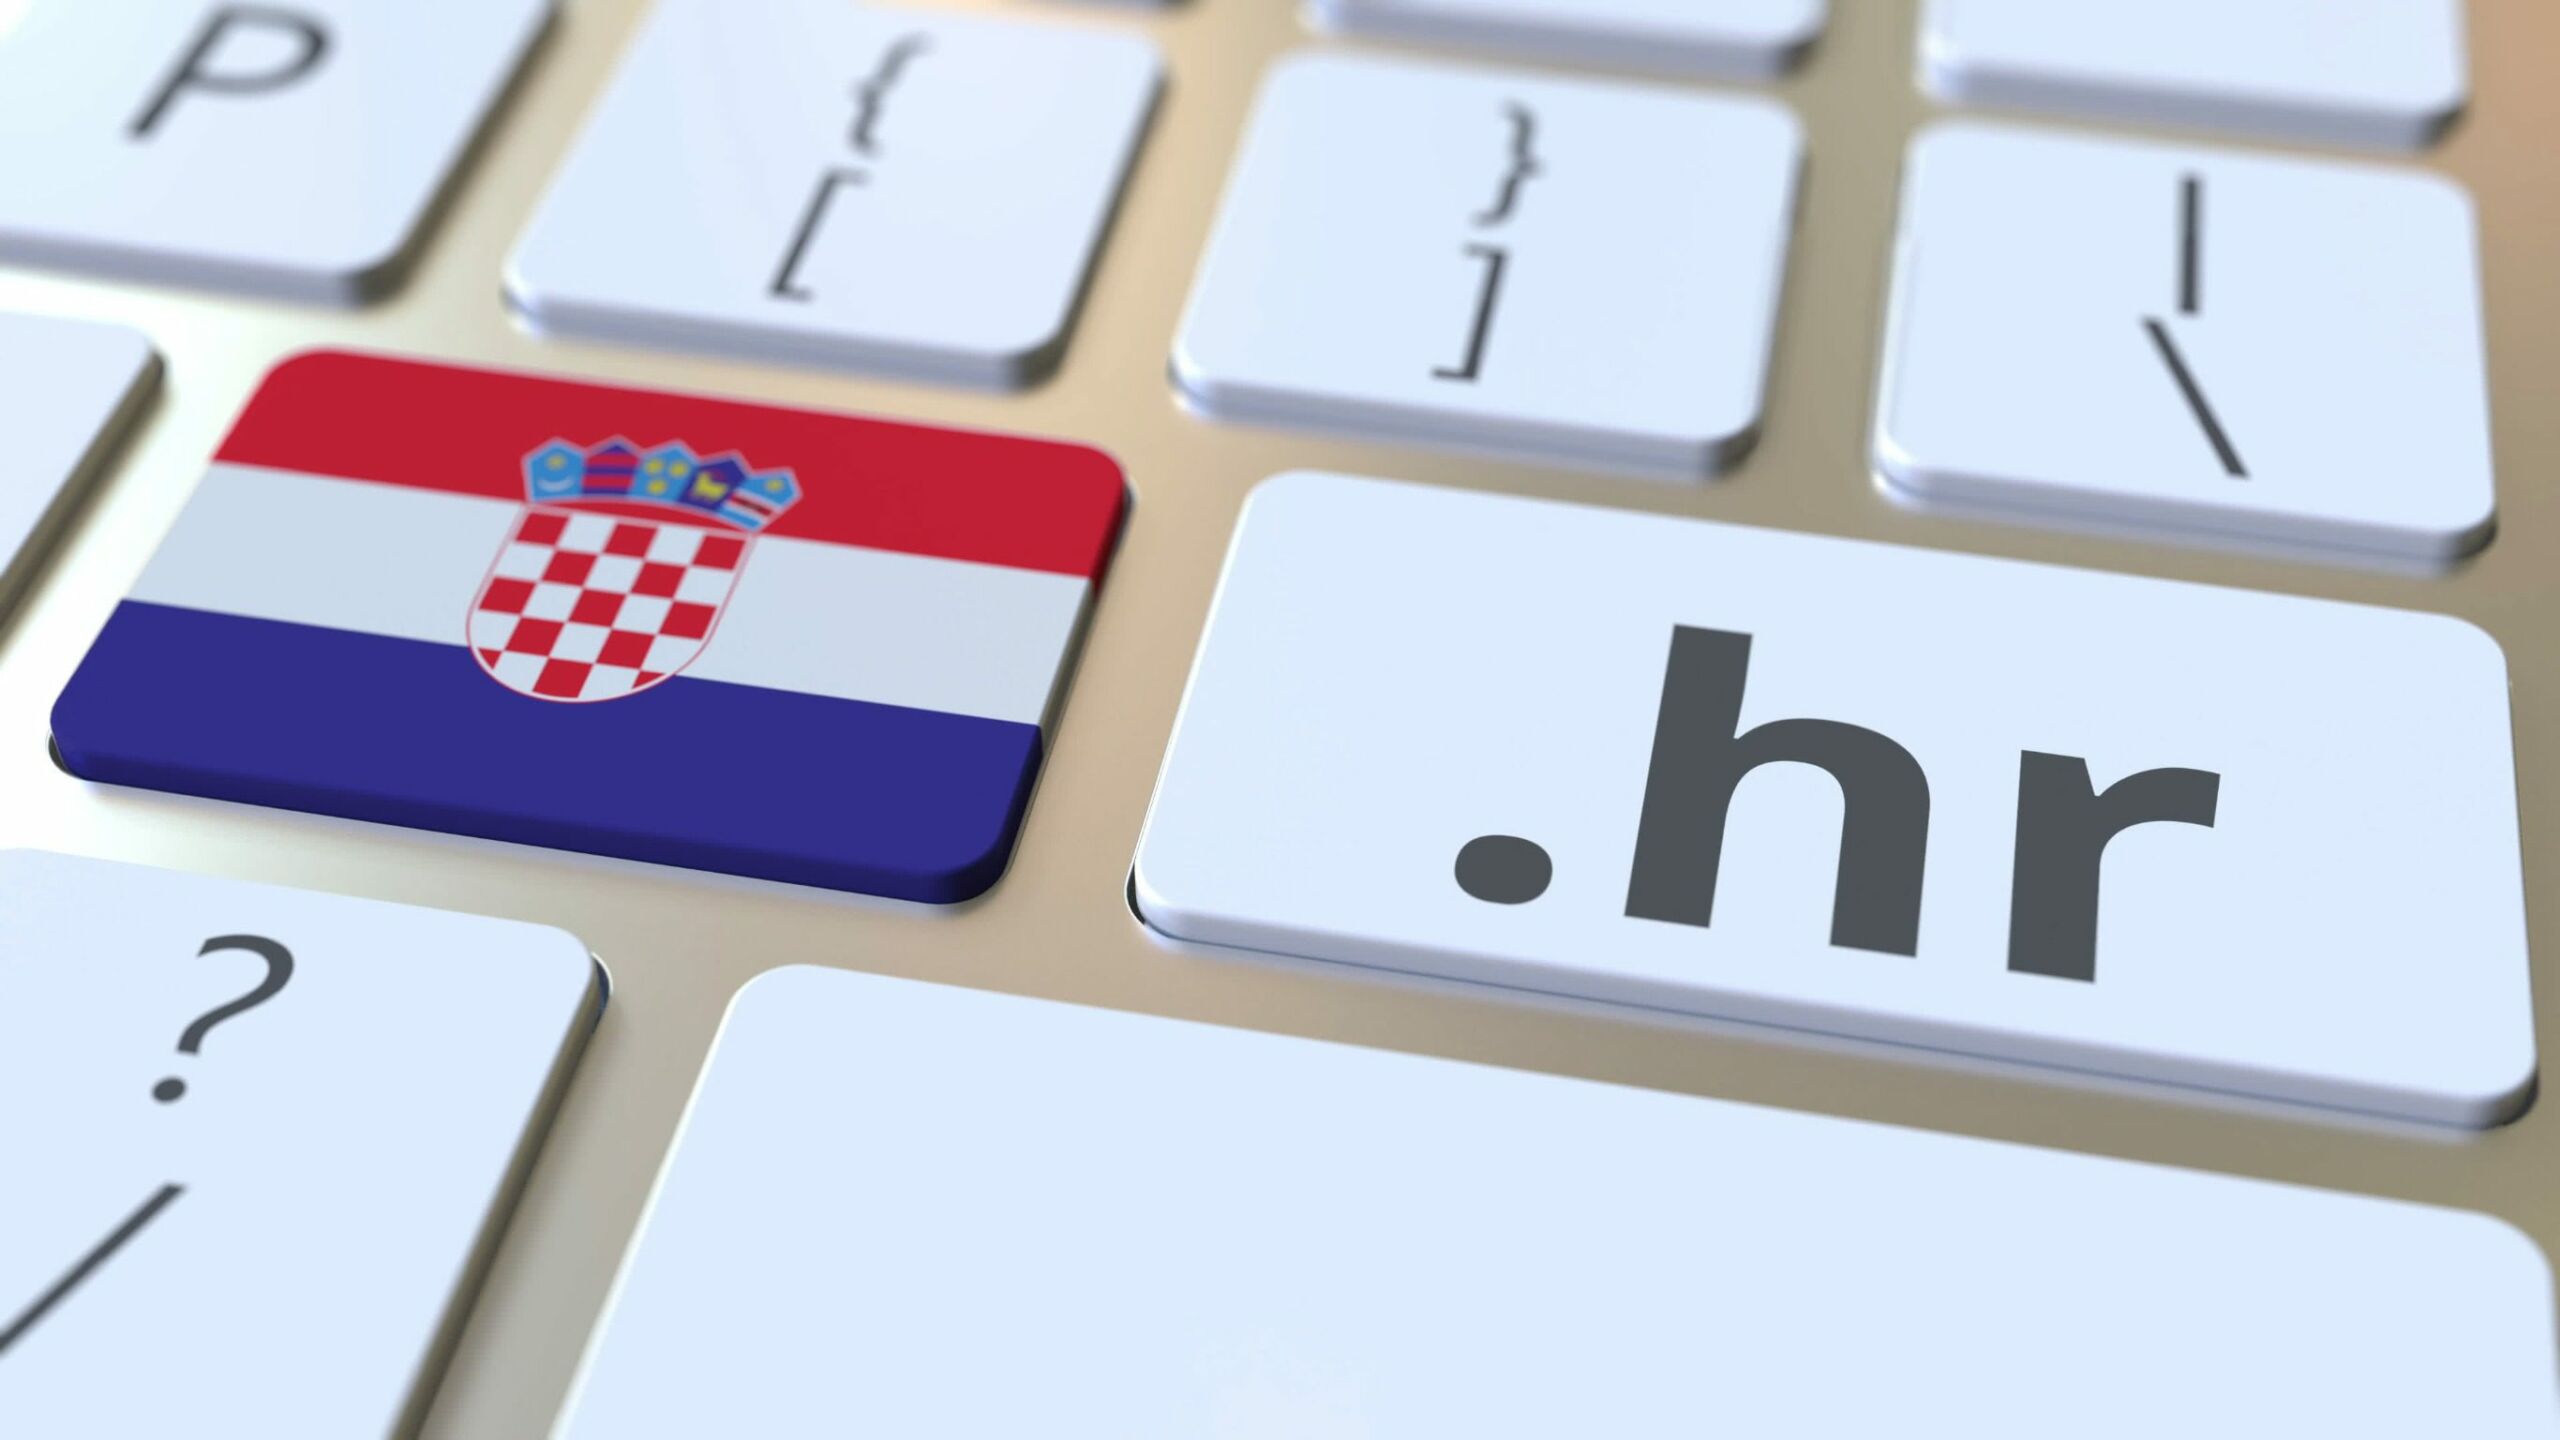 Grafika pokazująca flagę Chorwacji na klawiaturze